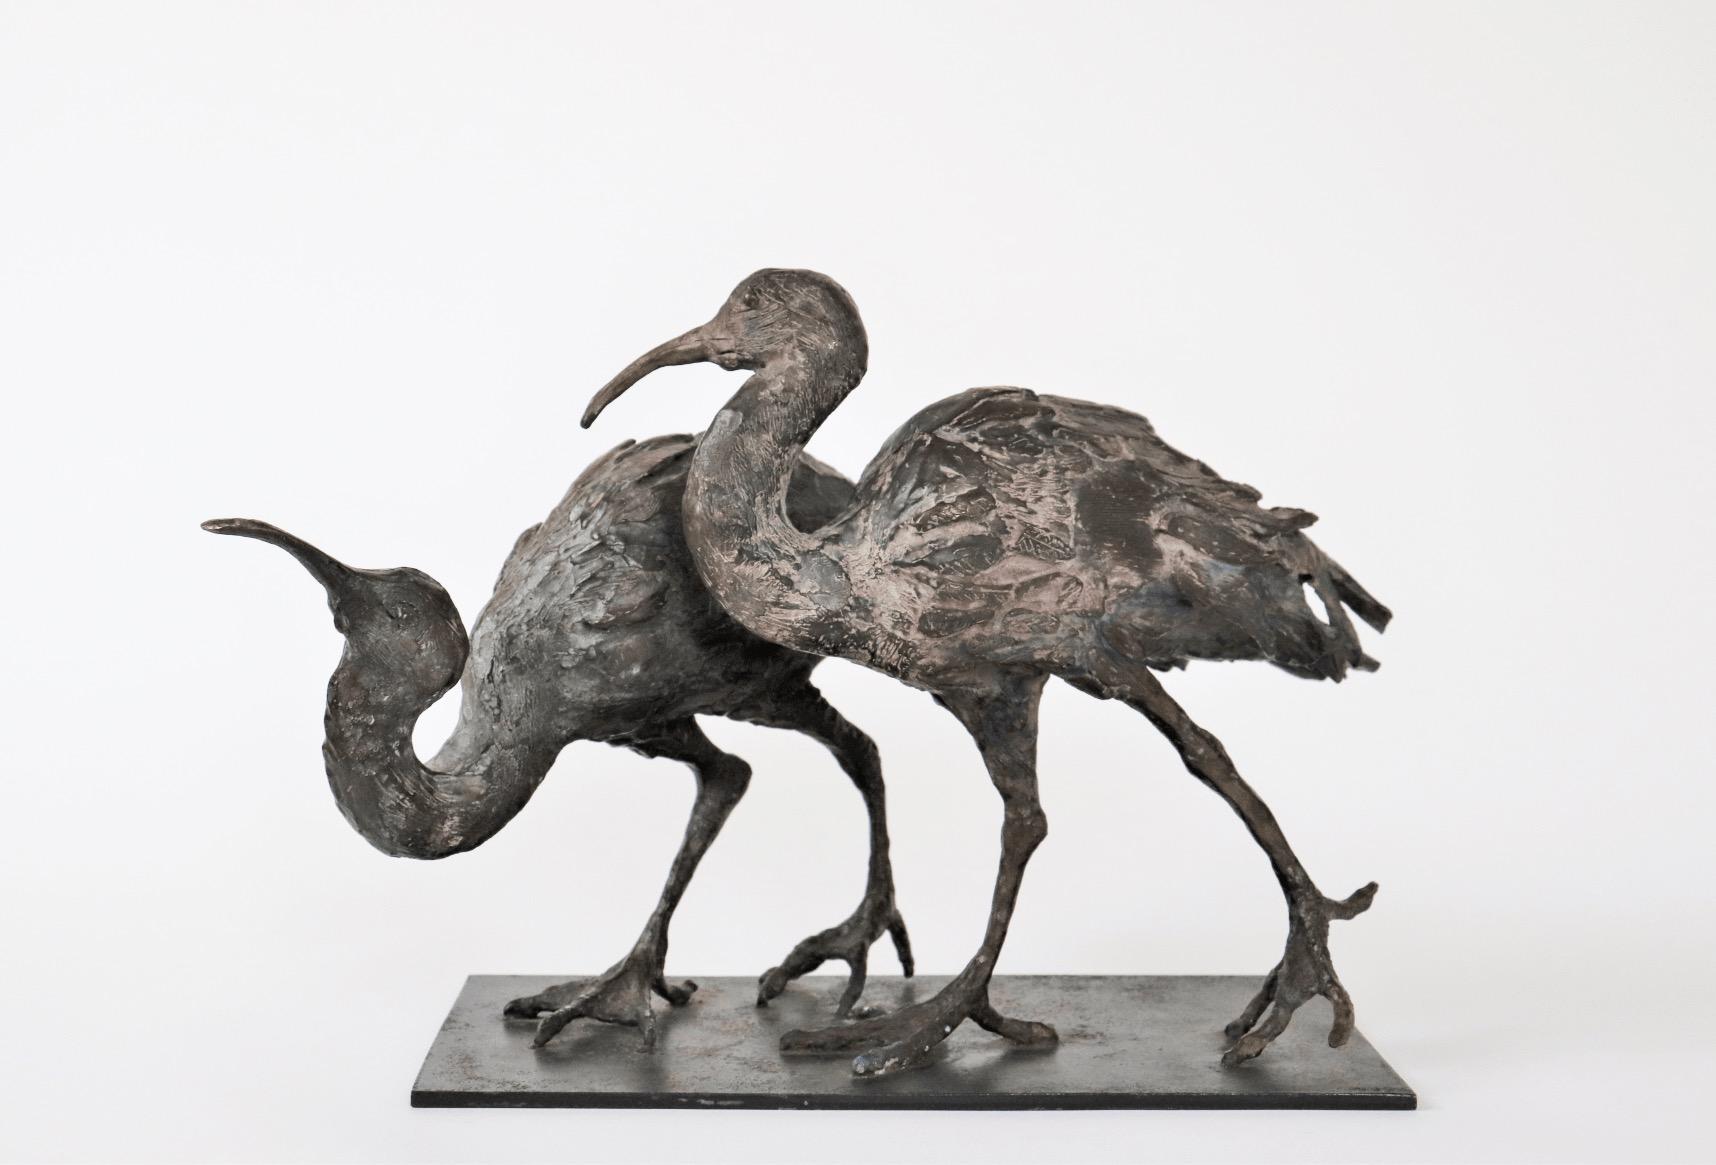 Two Ibises est une sculpture en bronze unique de l'artiste contemporain Chésade, dont les dimensions sont de 25,5 × 38 × 21 cm (10 × 15 × 8,3 in). La sculpture est signée et accompagnée d'un certificat d'authenticité.

La sculpture de Chésade